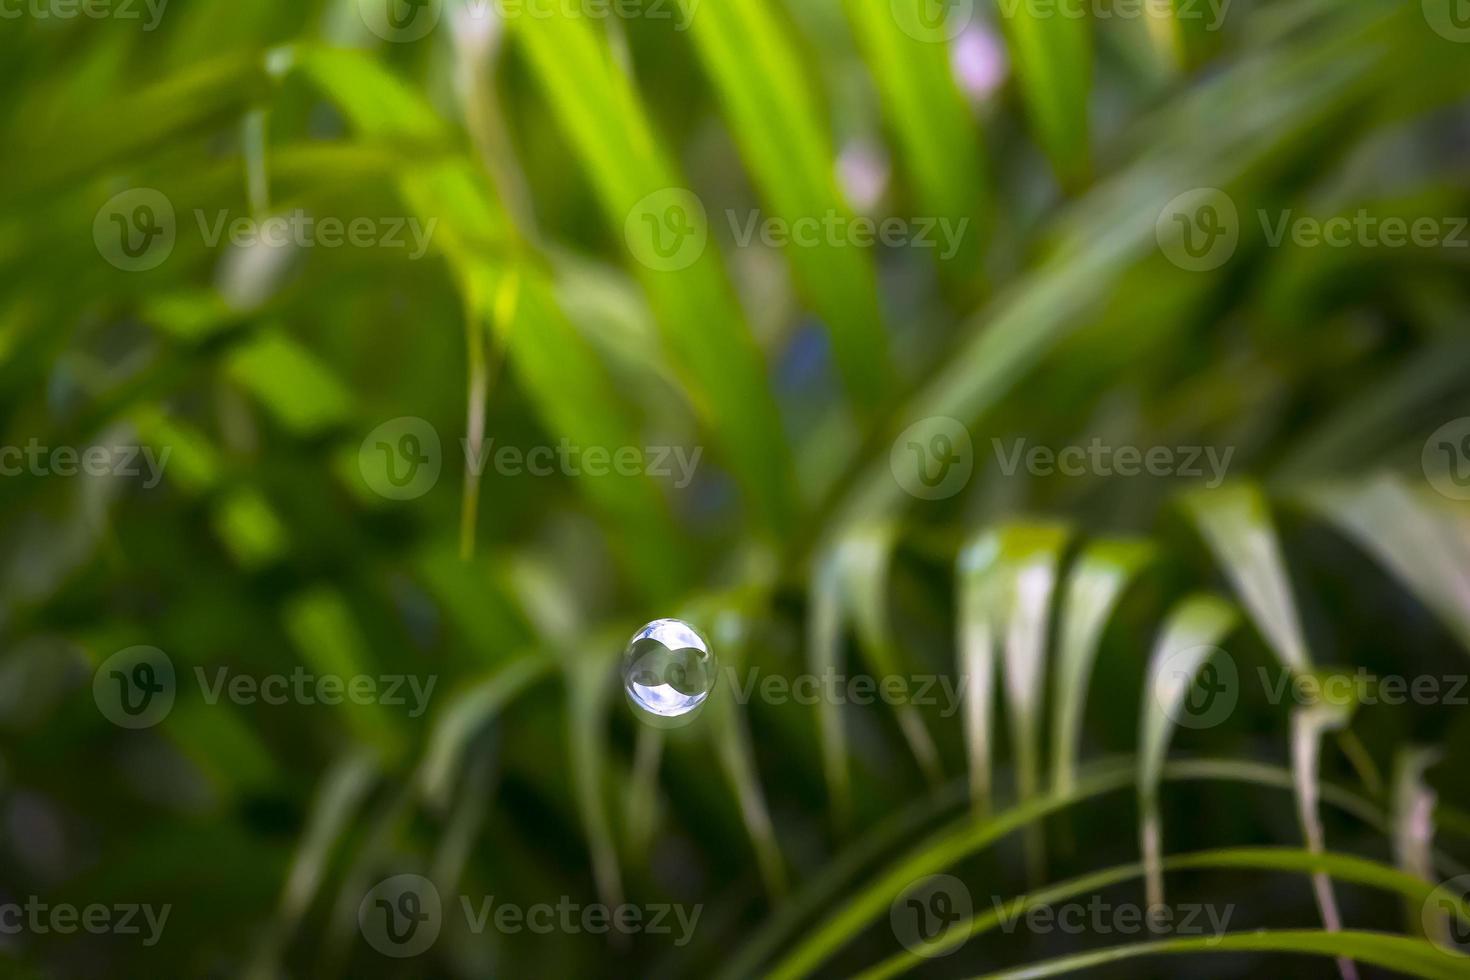 burbujas de agua flotando y cayendo sobre hojas verdes foto